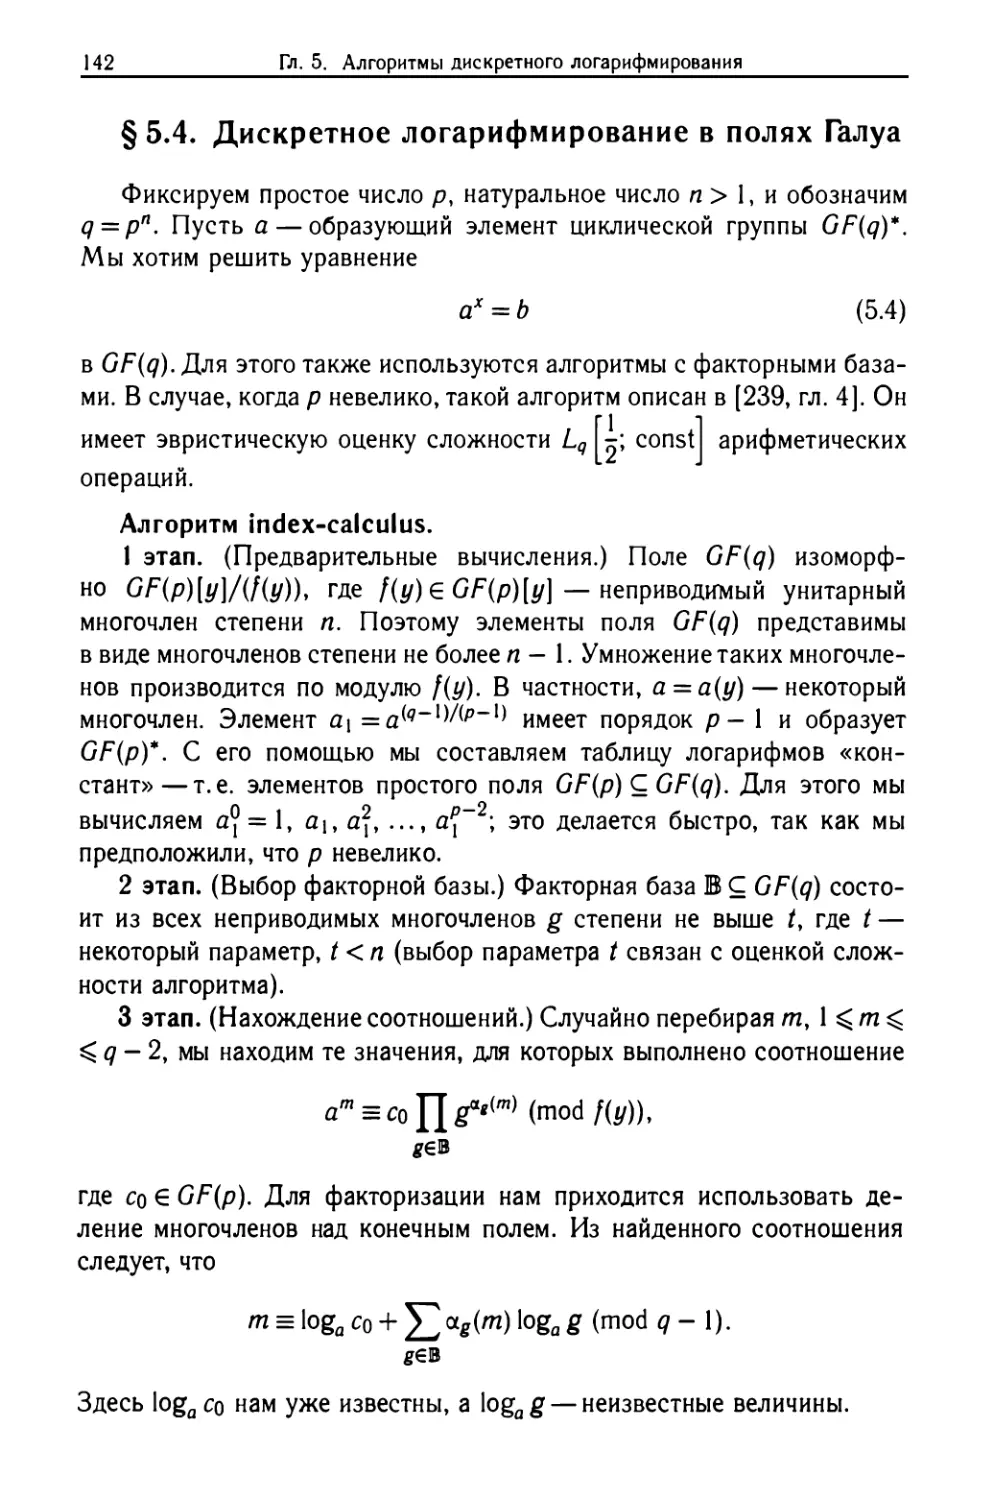 §5.4. Дискретное логарифмирование в полях Галуа